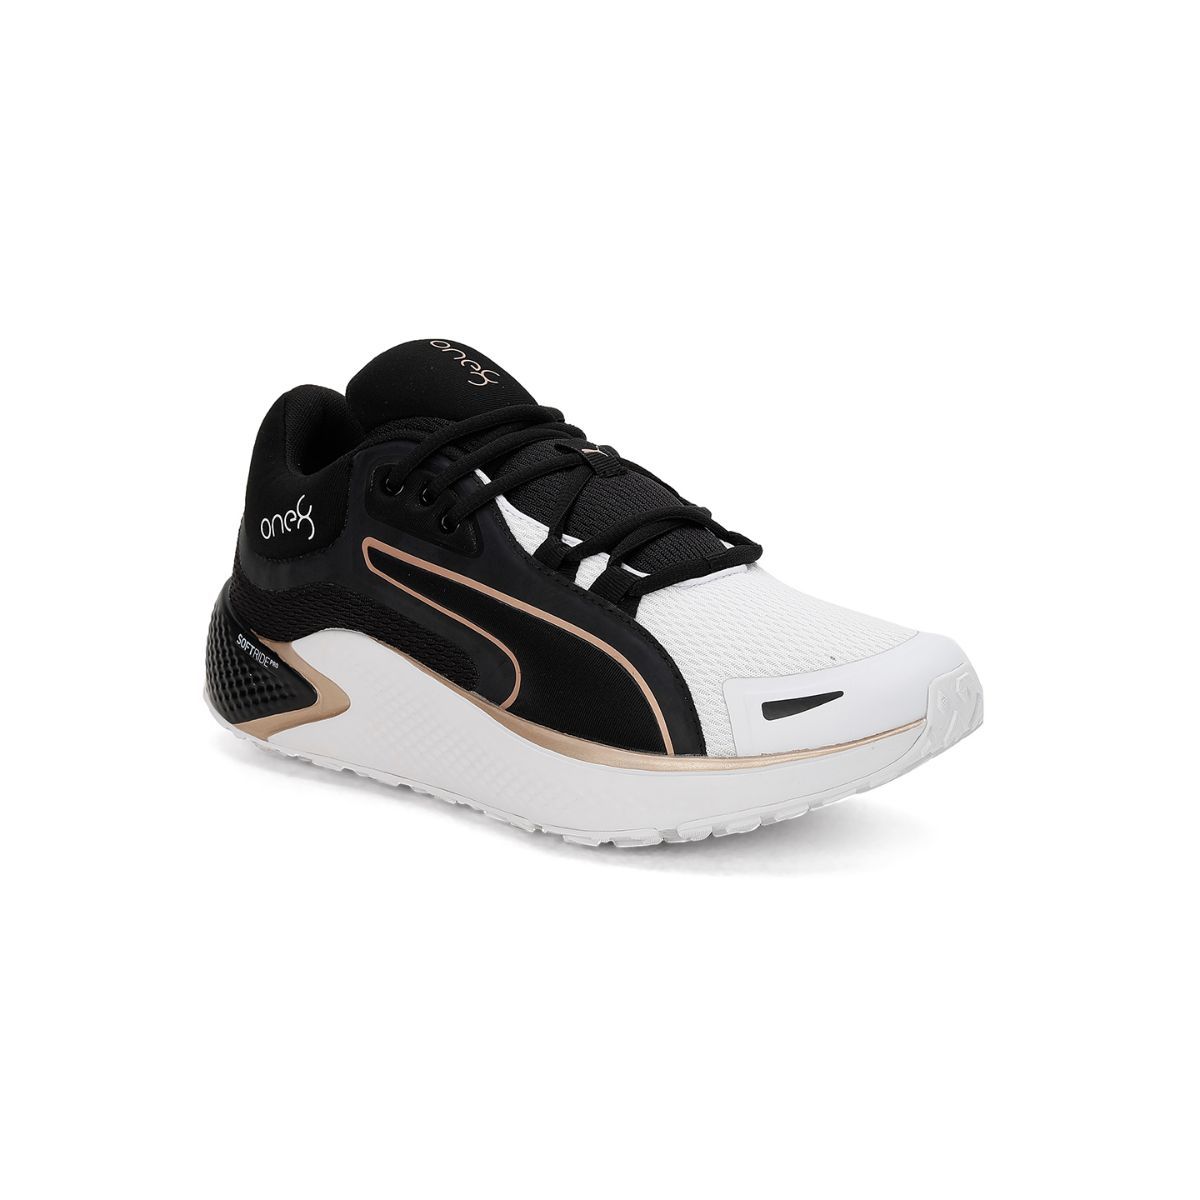 Buy Puma Softride Pro Coast One8 Unisex Black Training Shoes Online